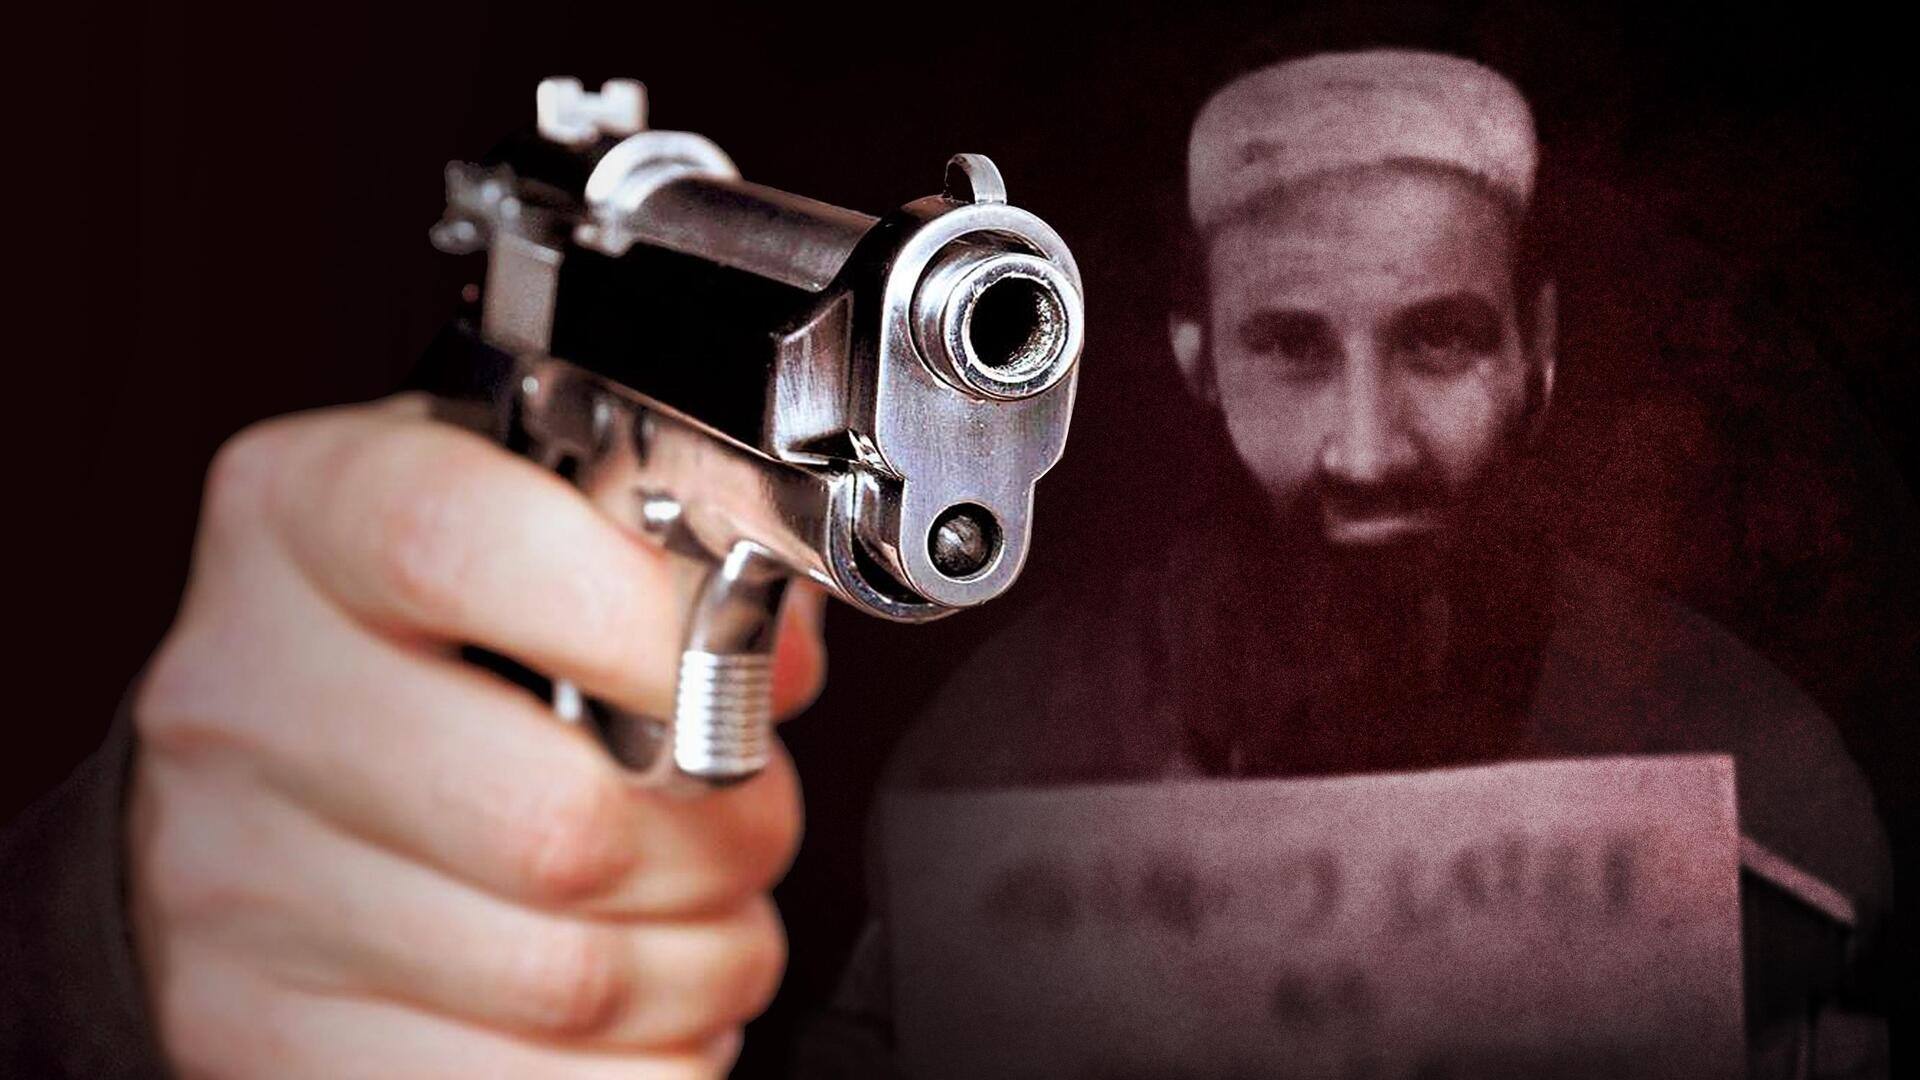 कौन था पाकिस्तान में मारा गया आतंकी शाहिद लतीफ, जिसने रची थी पठानकोट हमले की साजिश?